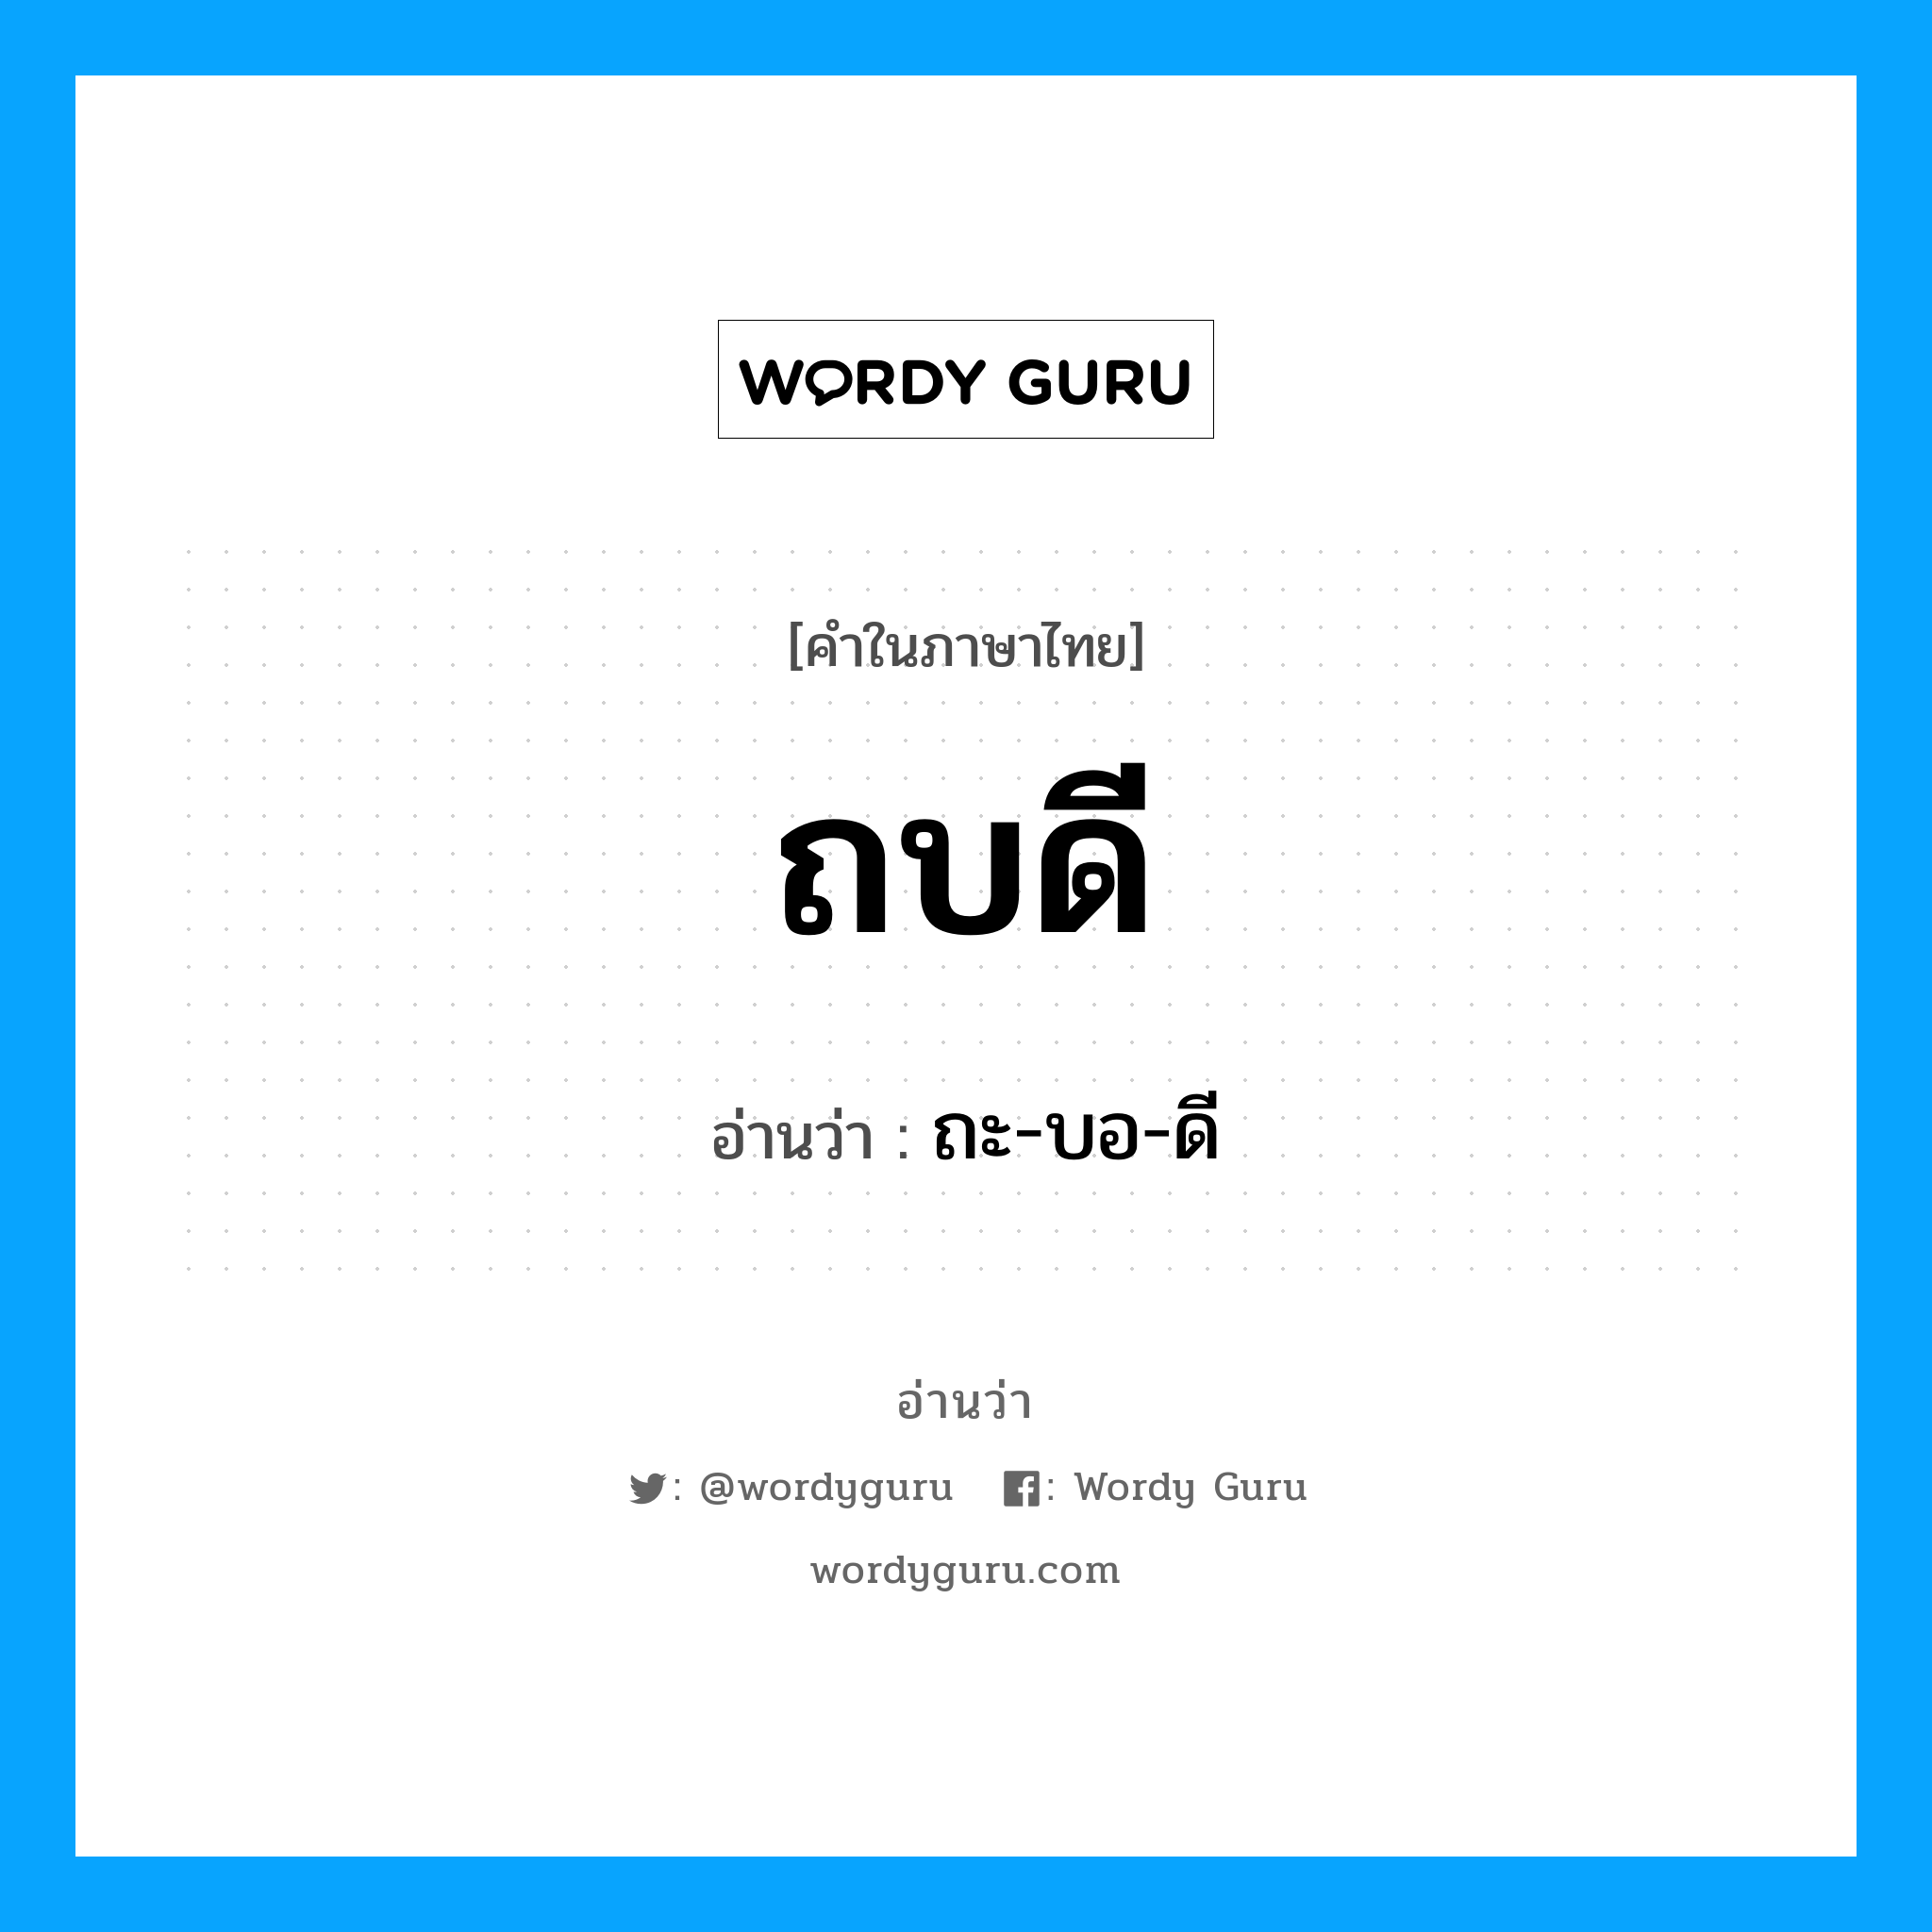 ถะ-บอ-ดี เป็นคำอ่านของคำไหน?, คำในภาษาไทย ถะ-บอ-ดี อ่านว่า ถบดี